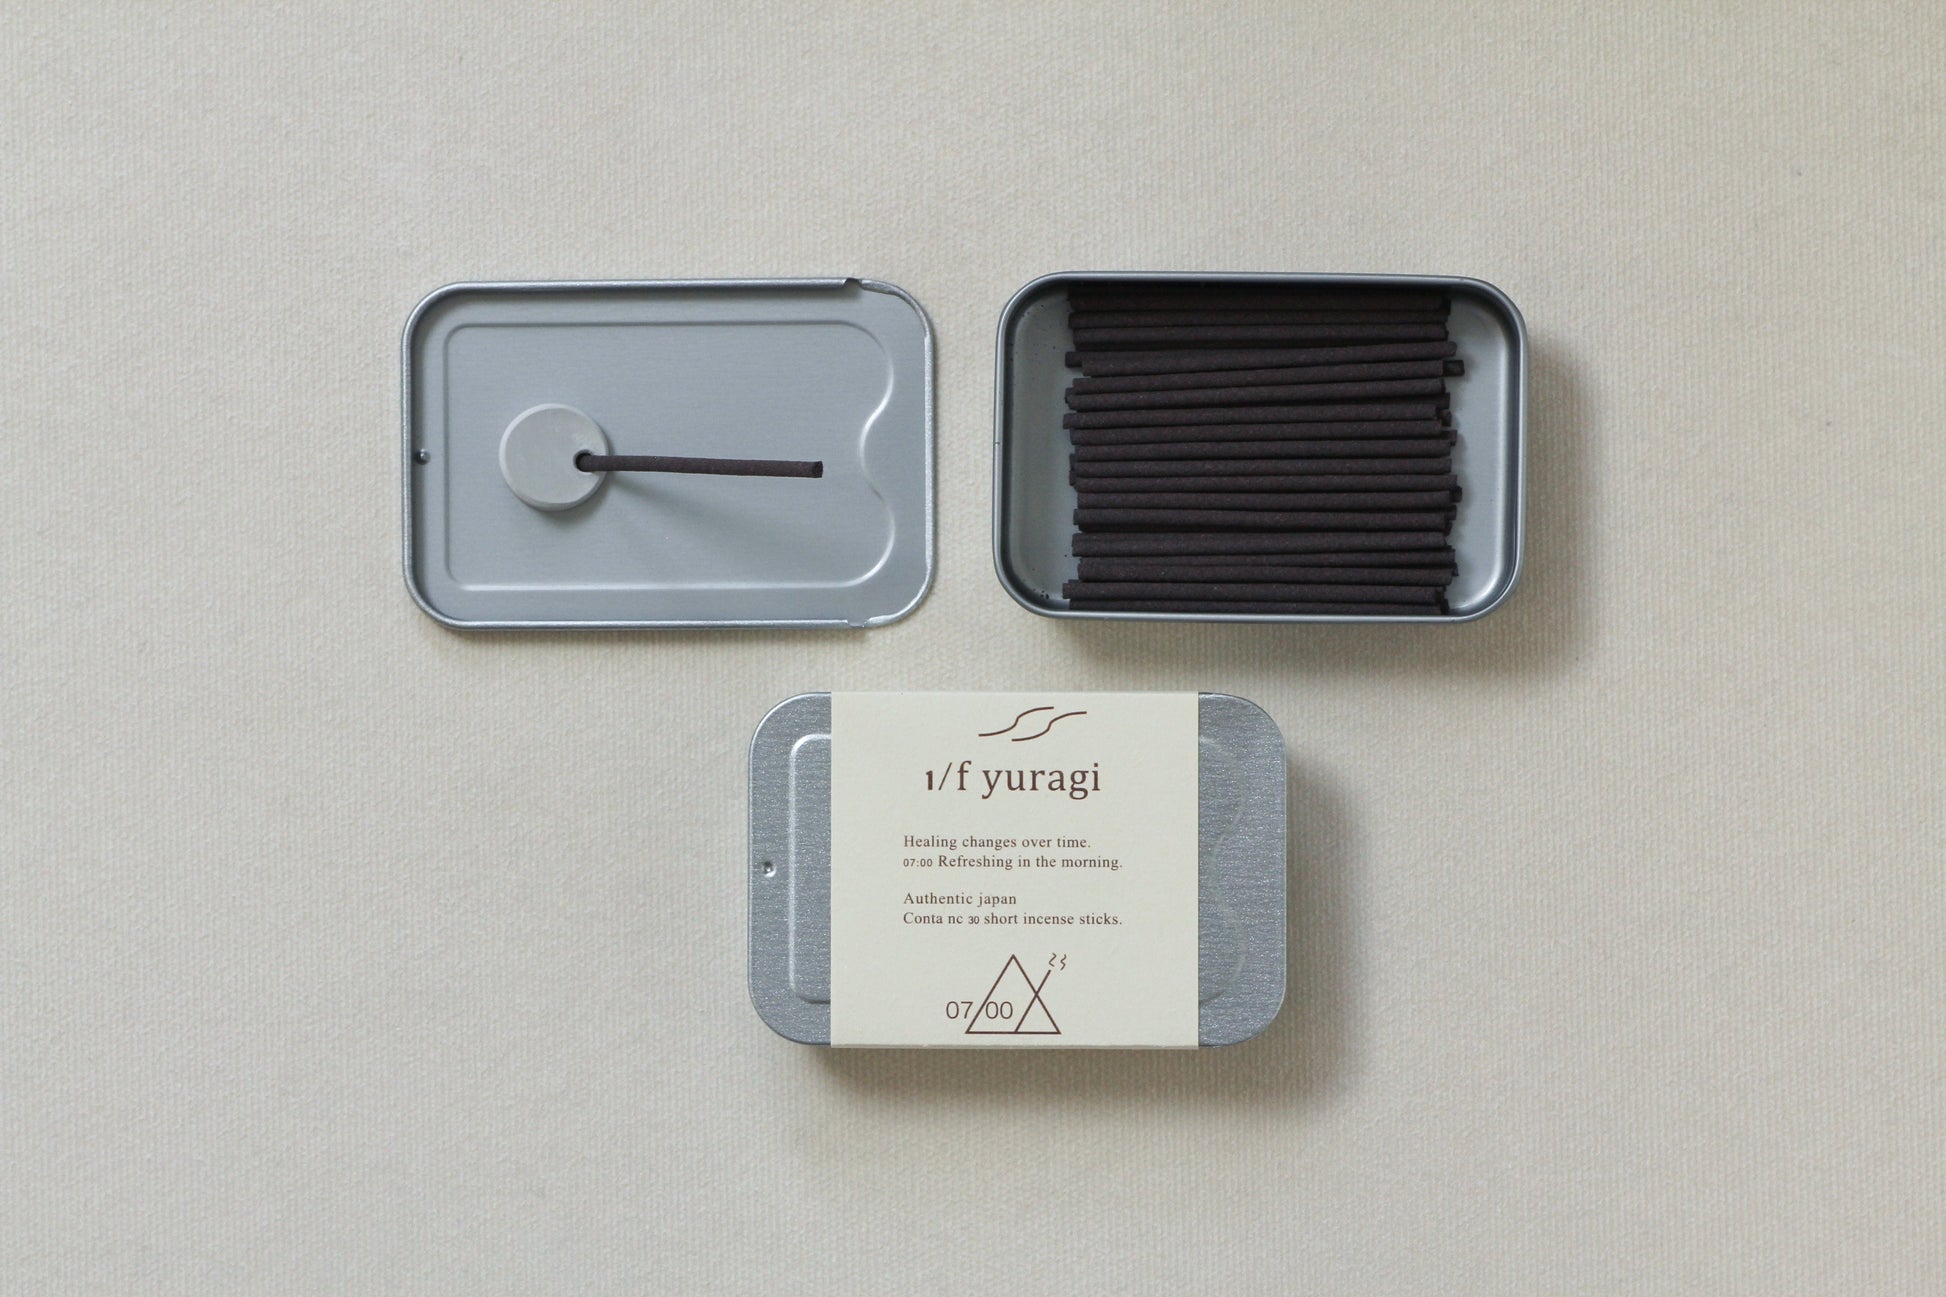 1/f yuragi incense 7:00 （1/ｆゆらぎ） スライドケースの裏面にお香立てを置き、お香を立ててお使いください。